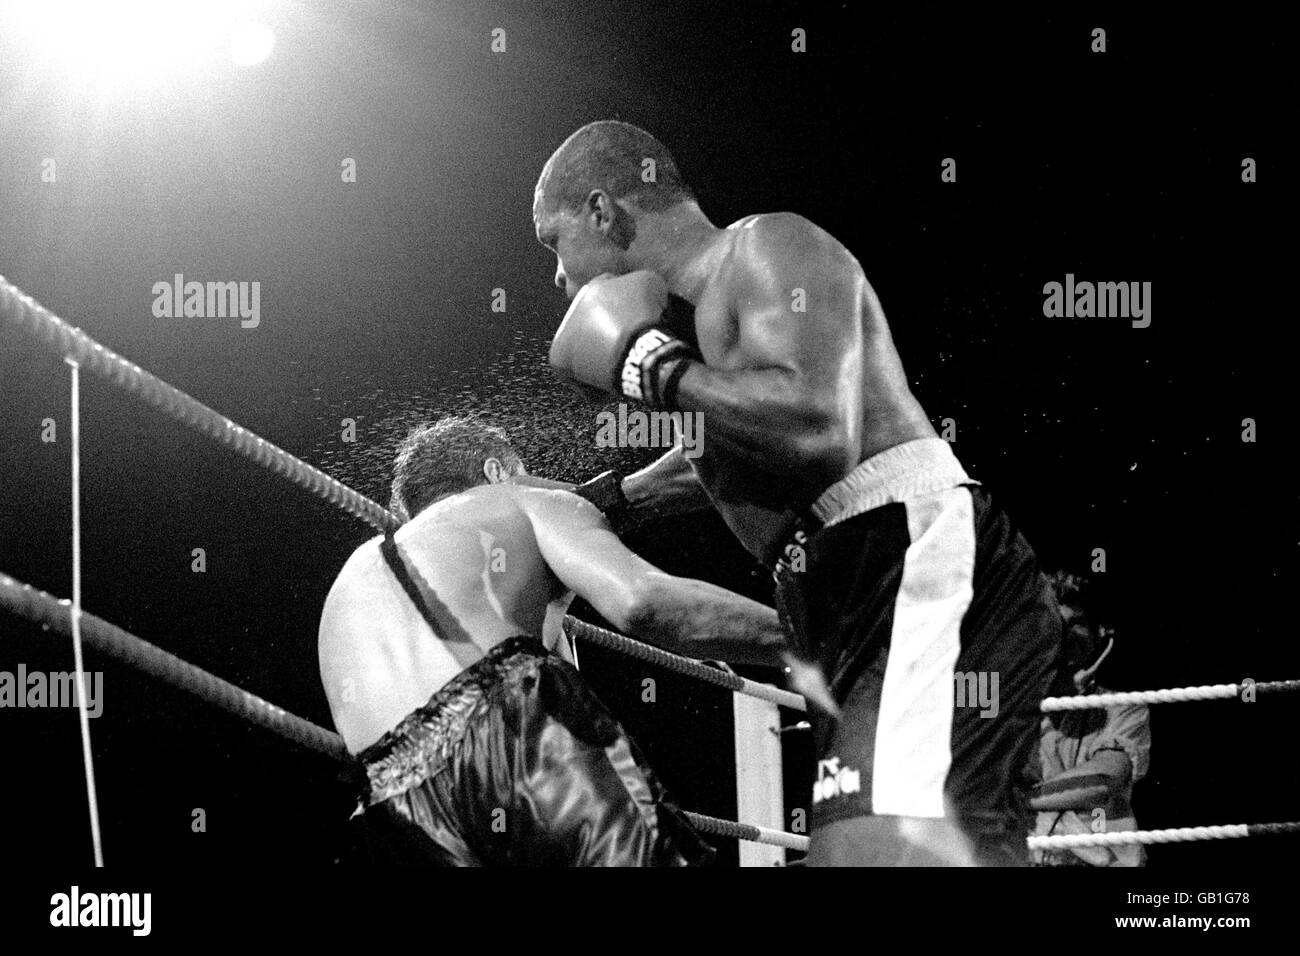 Pugilato - WBC Cruiserweight Championship - Carlos de Leon / Sammy Reeson - London Arena. Sammy Reeson, a sinistra, prende un duro colpo da Carlos de Leon. Foto Stock